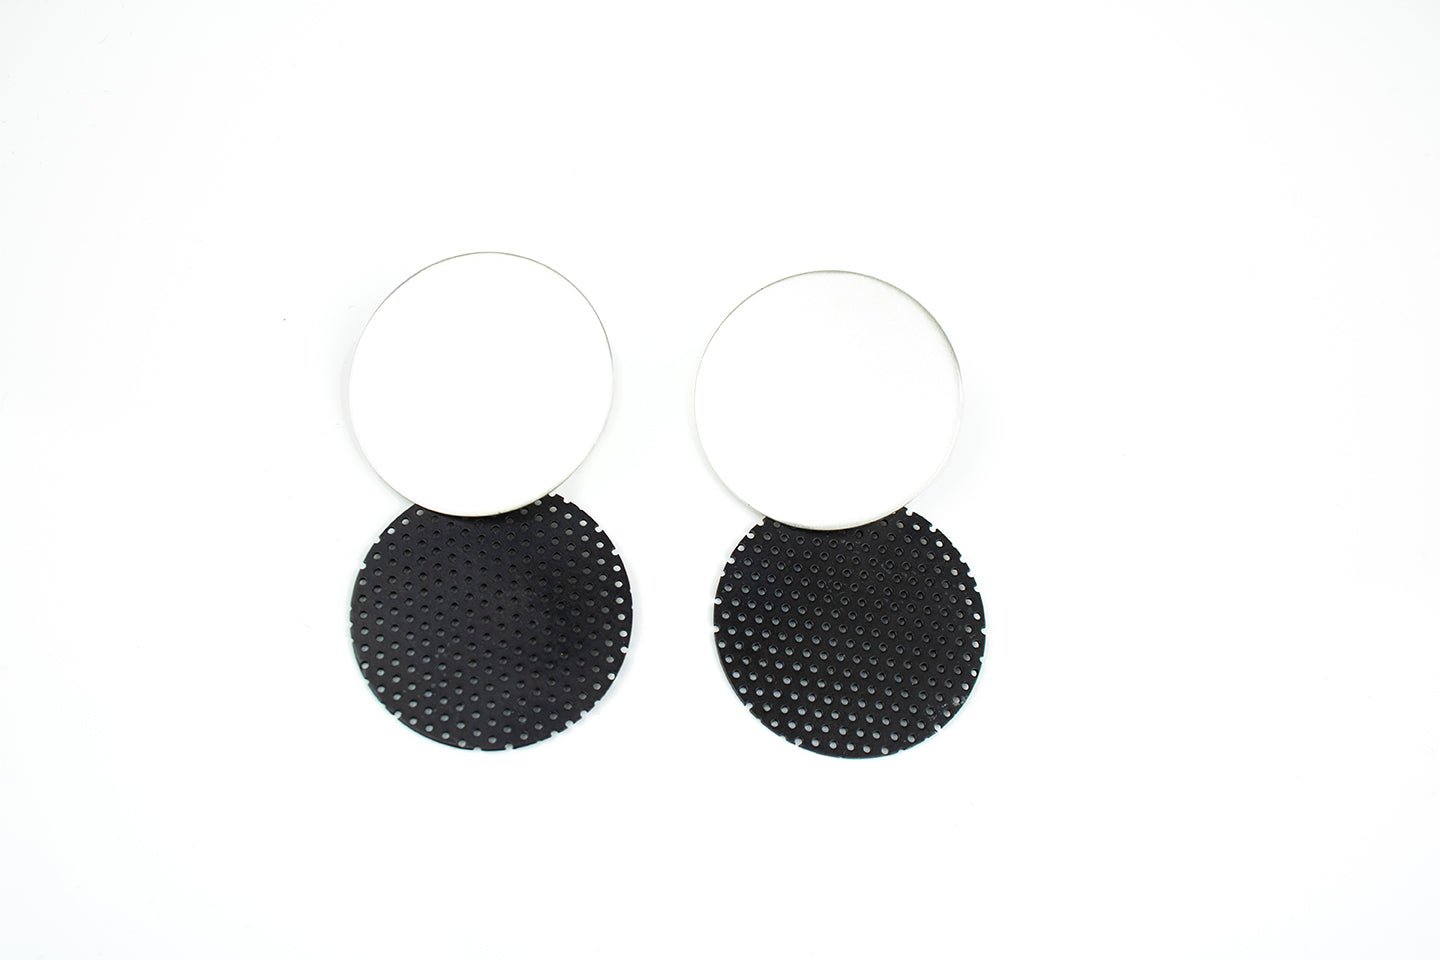 Double Dot Earrings -earrings- Lindsey Snell